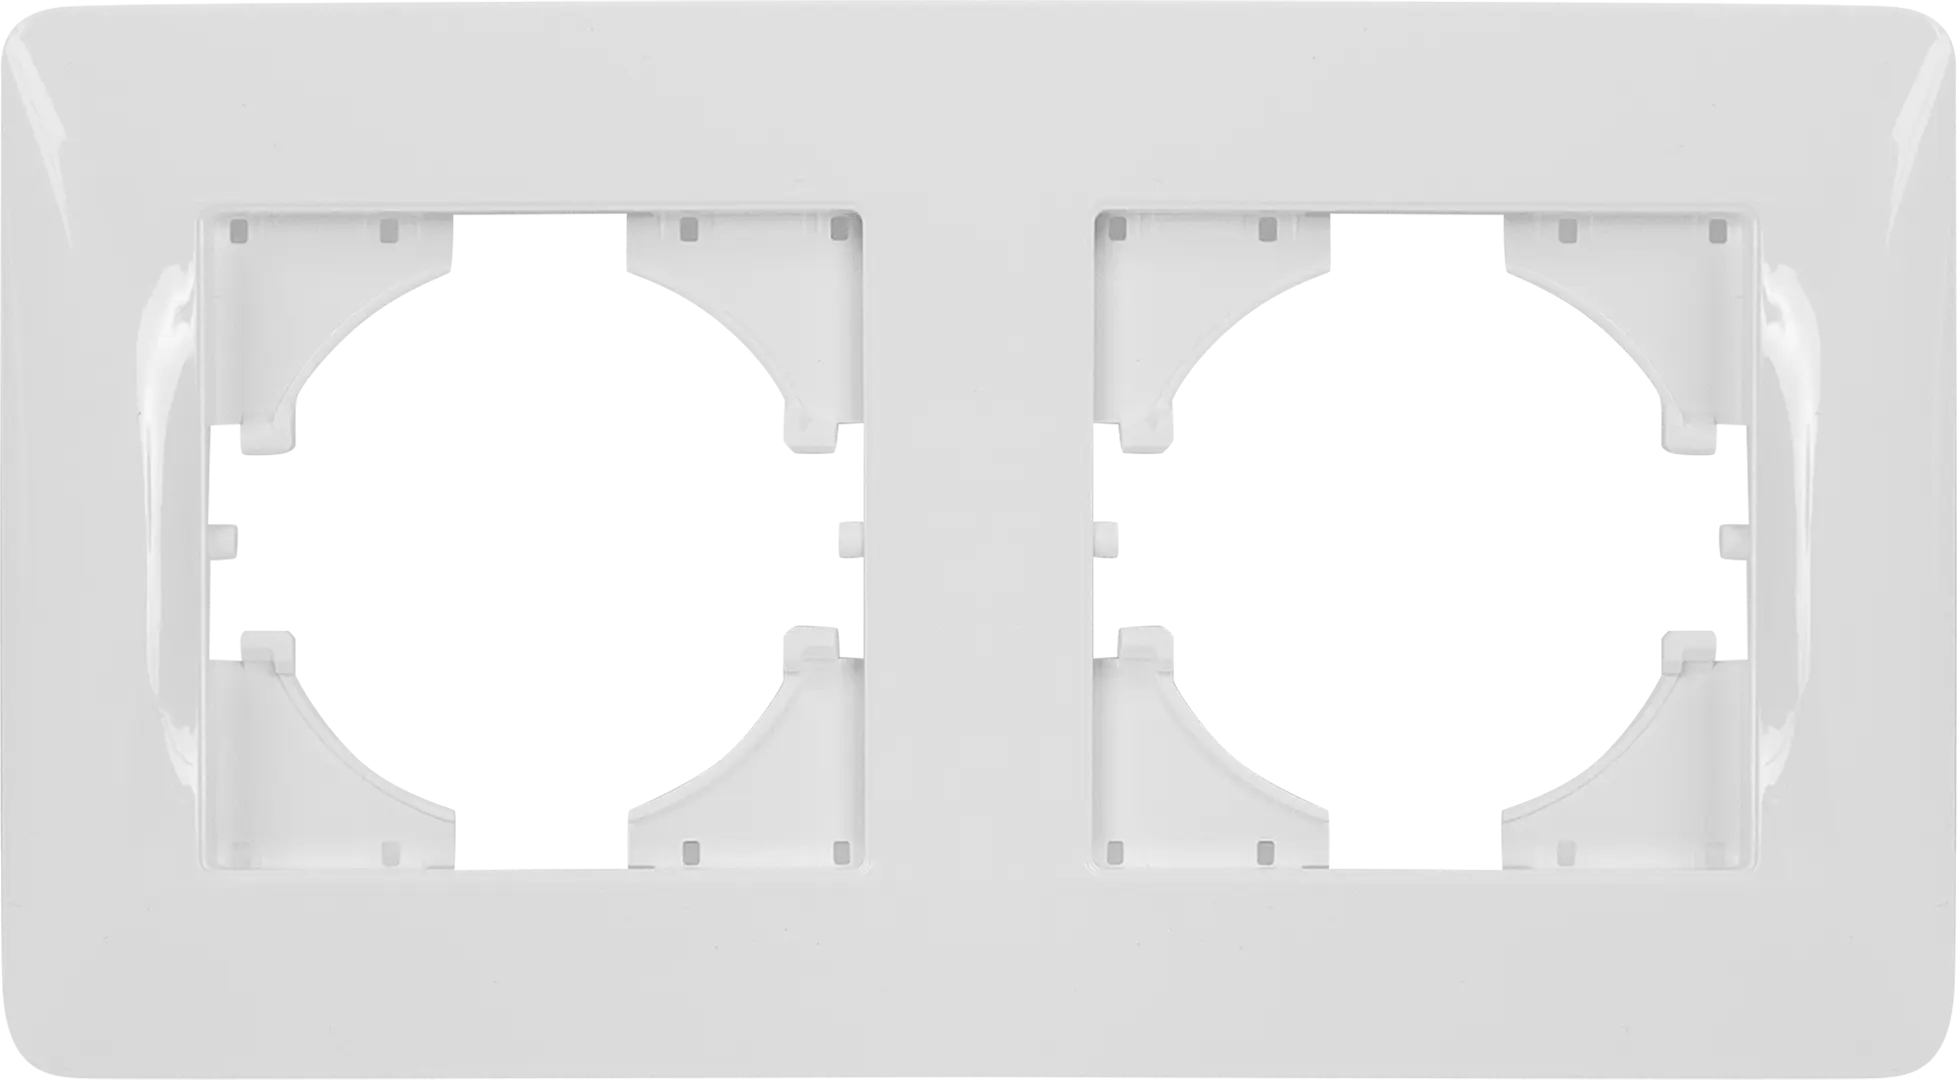 Рамка для розеток и выключателей Gusi Electric Ugra С1120-001 2 поста цвет белый